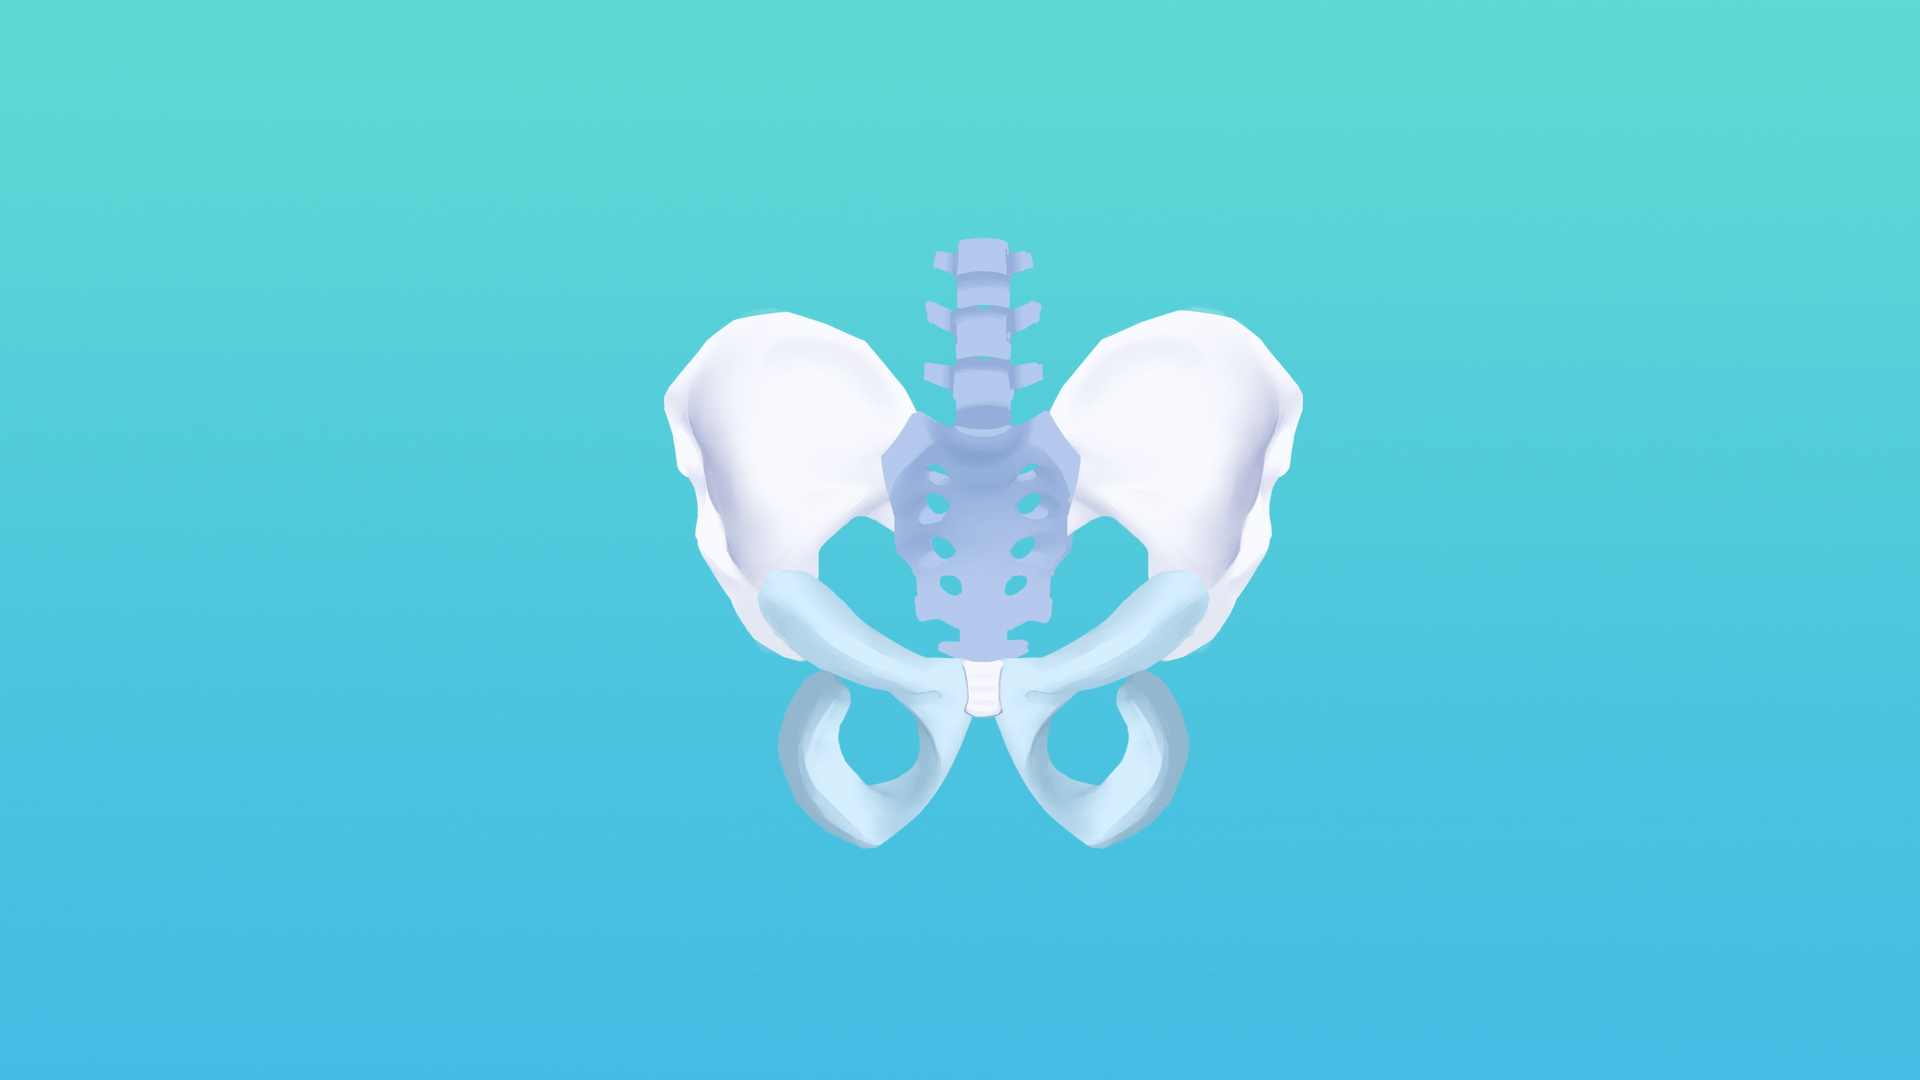 图71 骨盆的韧带-人体解剖组织学-医学